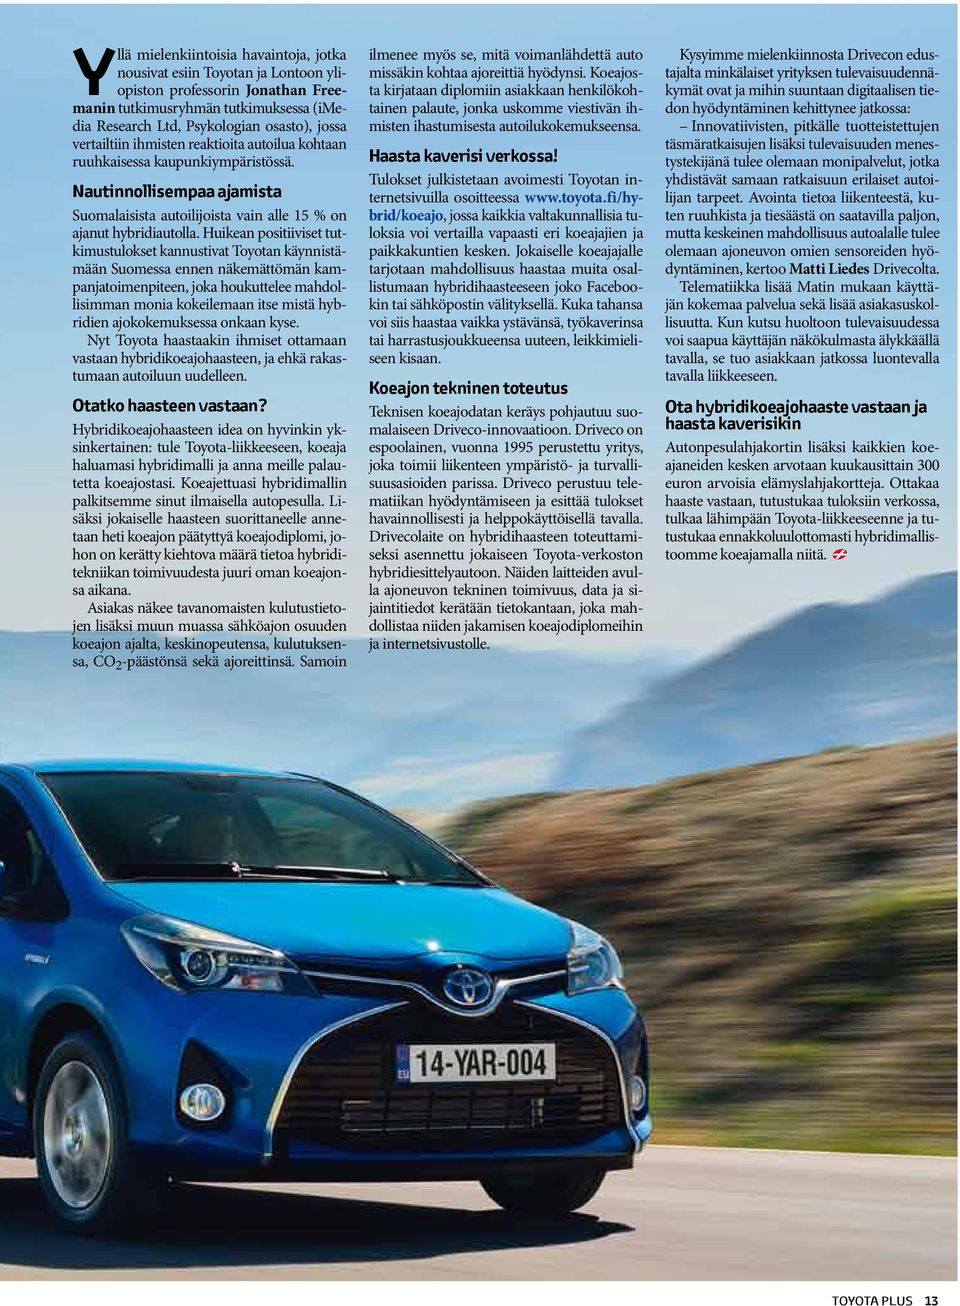 Huikean positiiviset tutkimustulokset kannustivat Toyotan käynnistämään Suomessa ennen näkemättömän kampanjatoimenpiteen, joka houkuttelee mahdollisimman monia kokeilemaan itse mistä hybridien